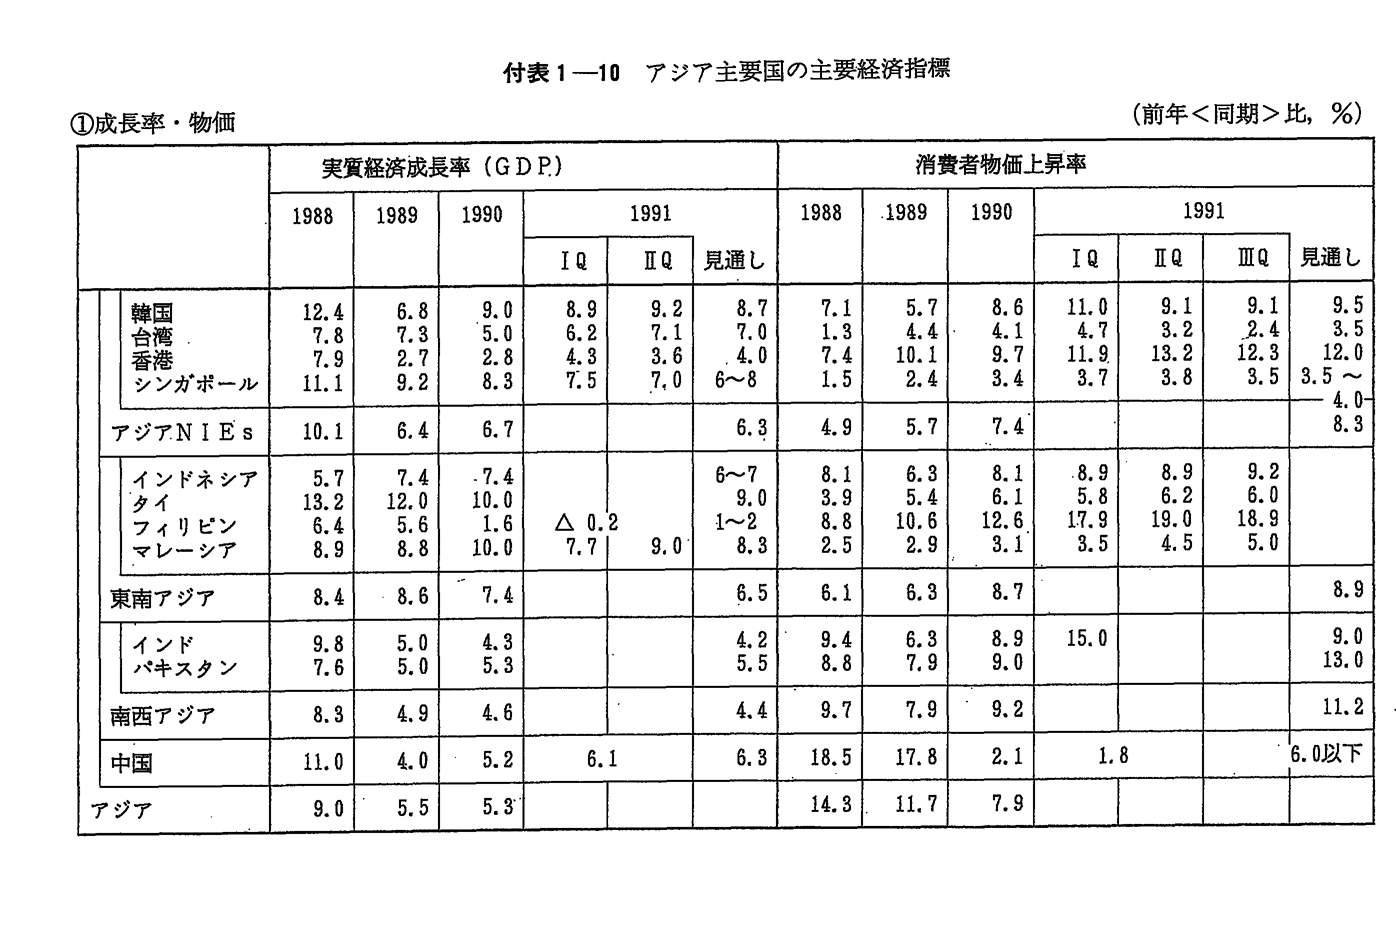 付表1-10　アジア主要国の主要経済指標 (1)成長率・物価